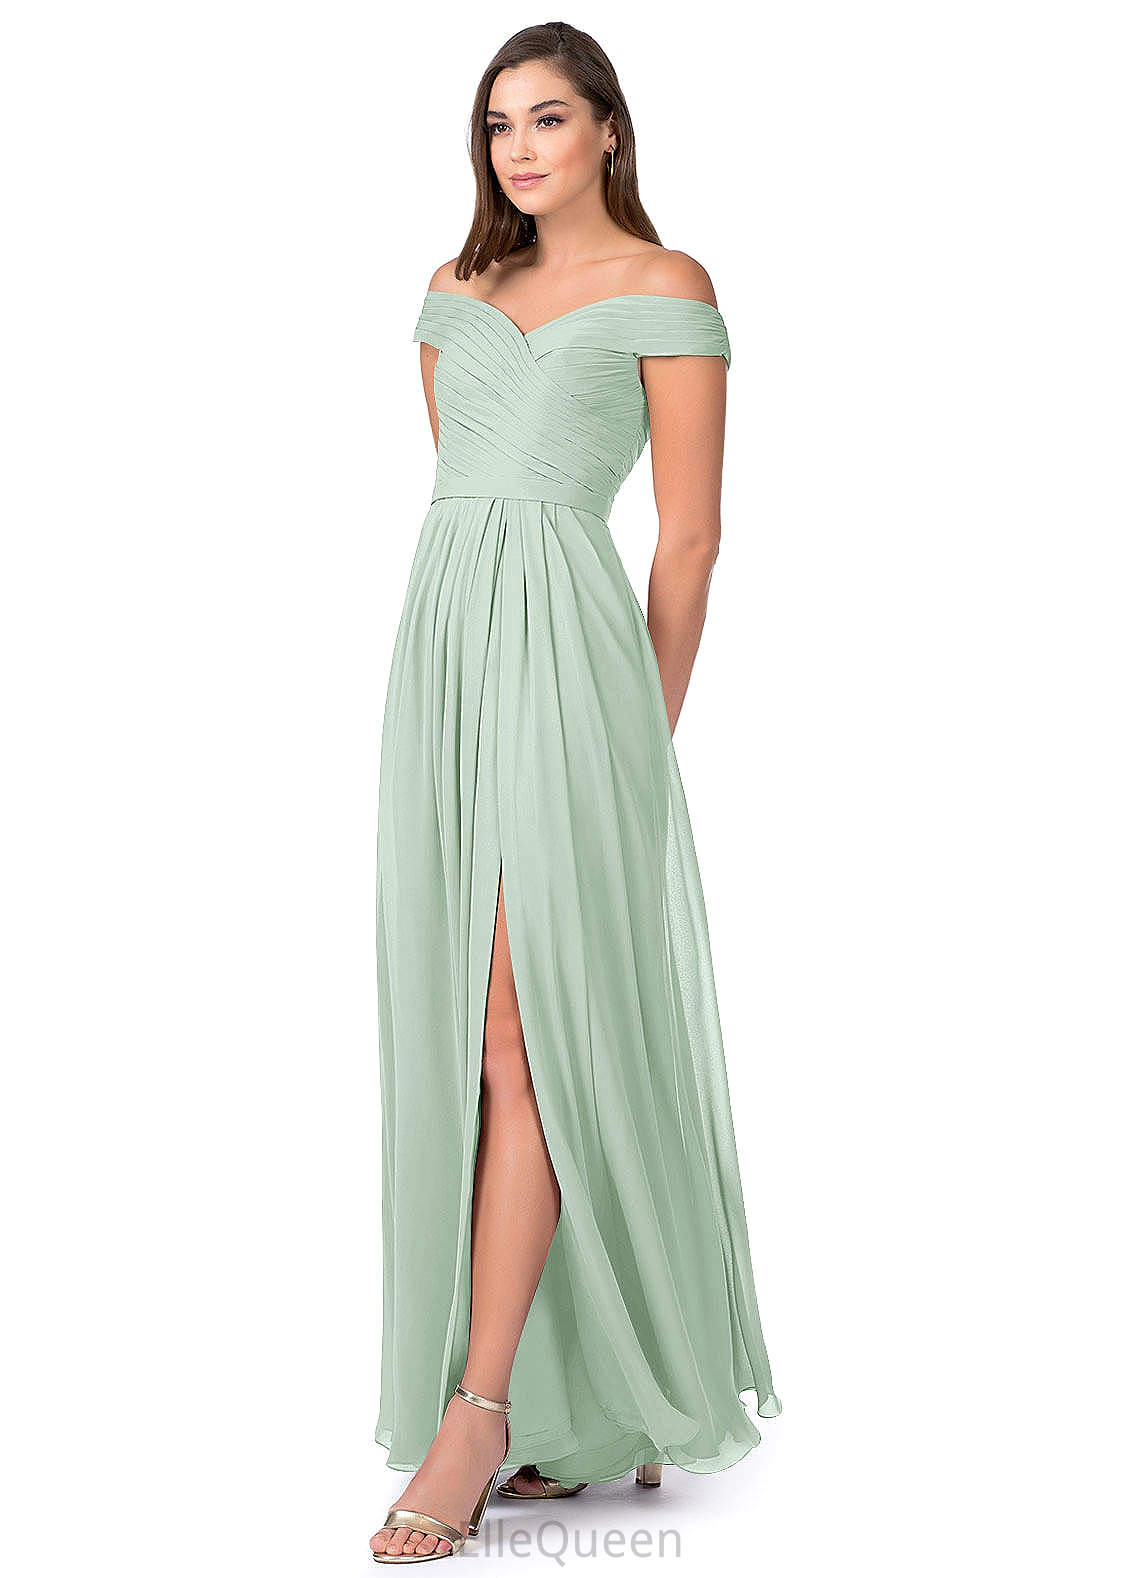 Brianna Straps Floor Length Natural Waist Sleeveless A-Line/Princess Bridesmaid Dresses